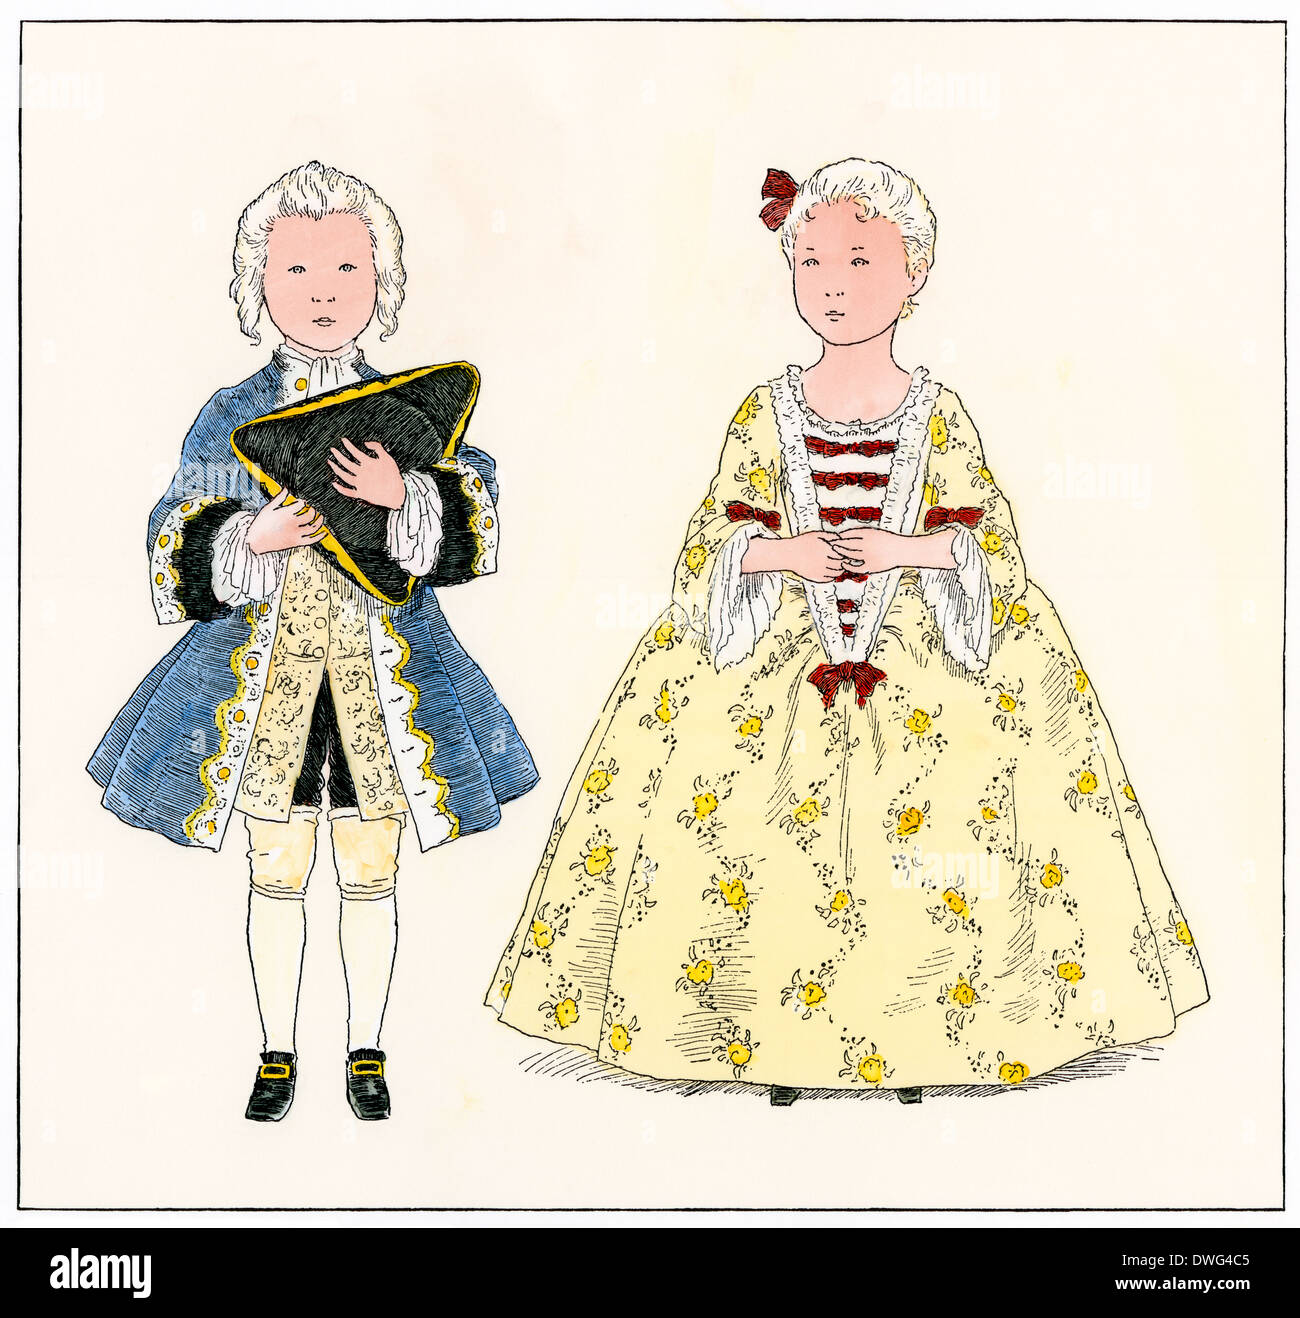 Les enfants français aristocratique habillés comme des adultes, 1700. À la main, gravure sur bois Banque D'Images